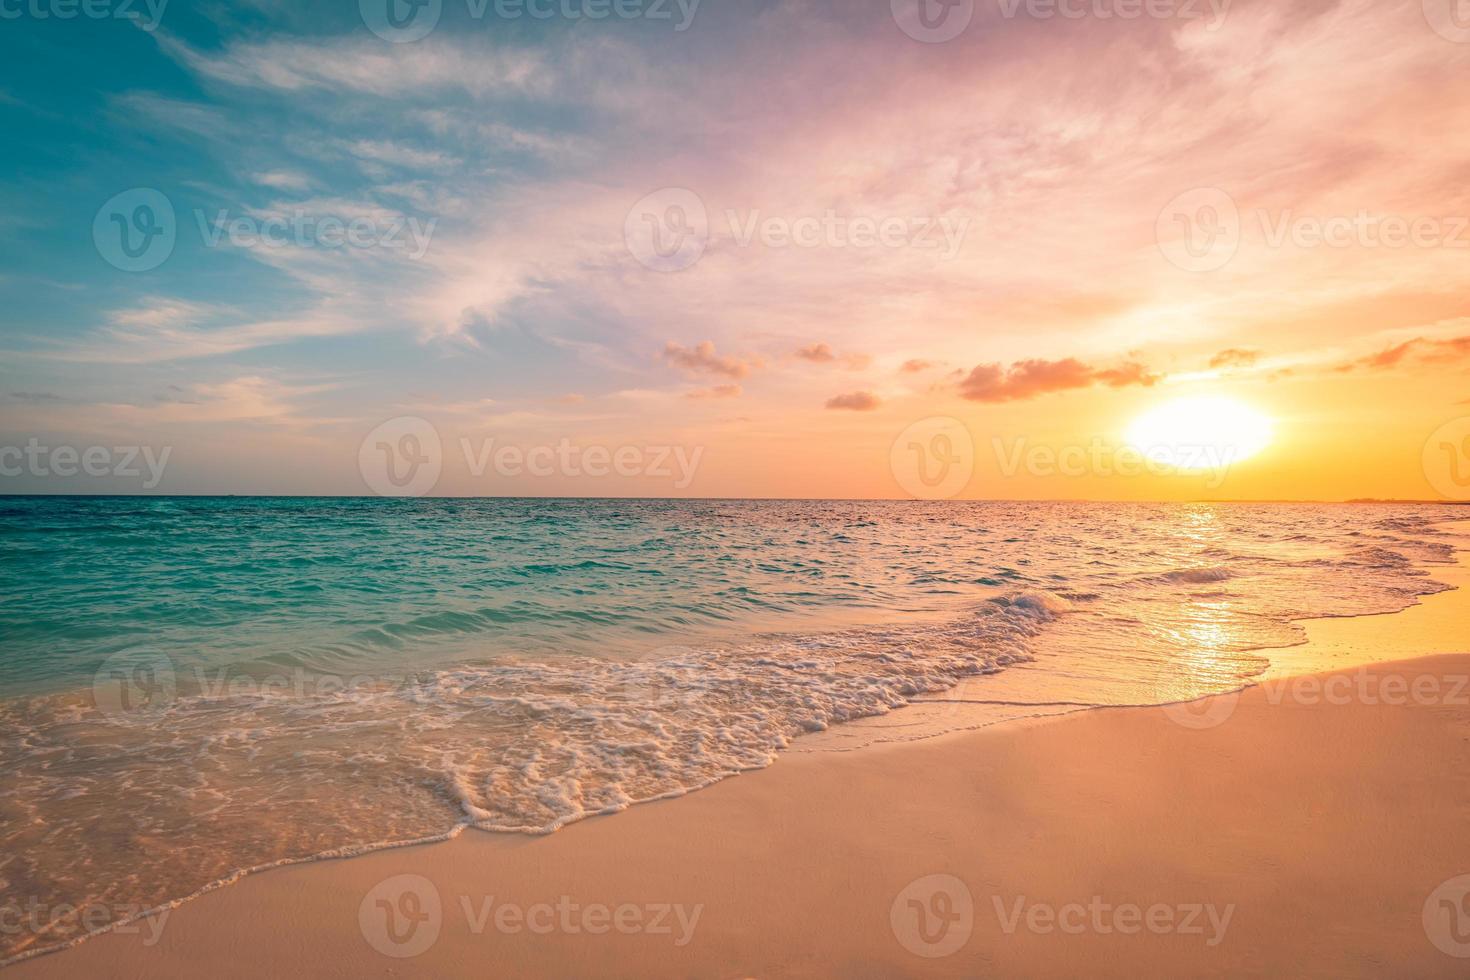 closeup mar praia de areia. paisagem panorâmica da praia. inspirar o horizonte da paisagem marinha tropical. nuvens do céu do sol laranja e dourado. tranquilo relaxante liberdade praia costa feliz romântico meditação verão natureza foto